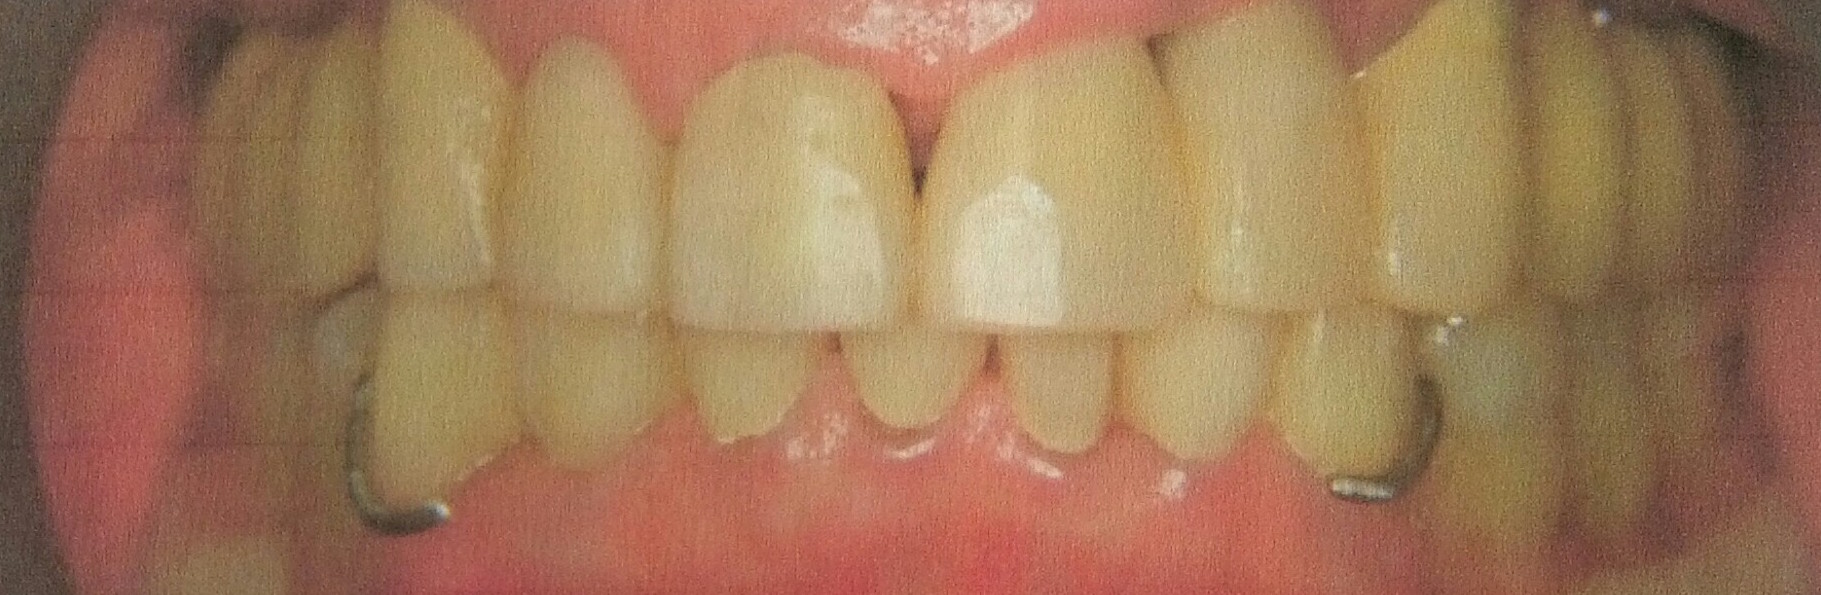 Wer will seine Zähne schon einem kranken Zahnarzt anvertrauen?